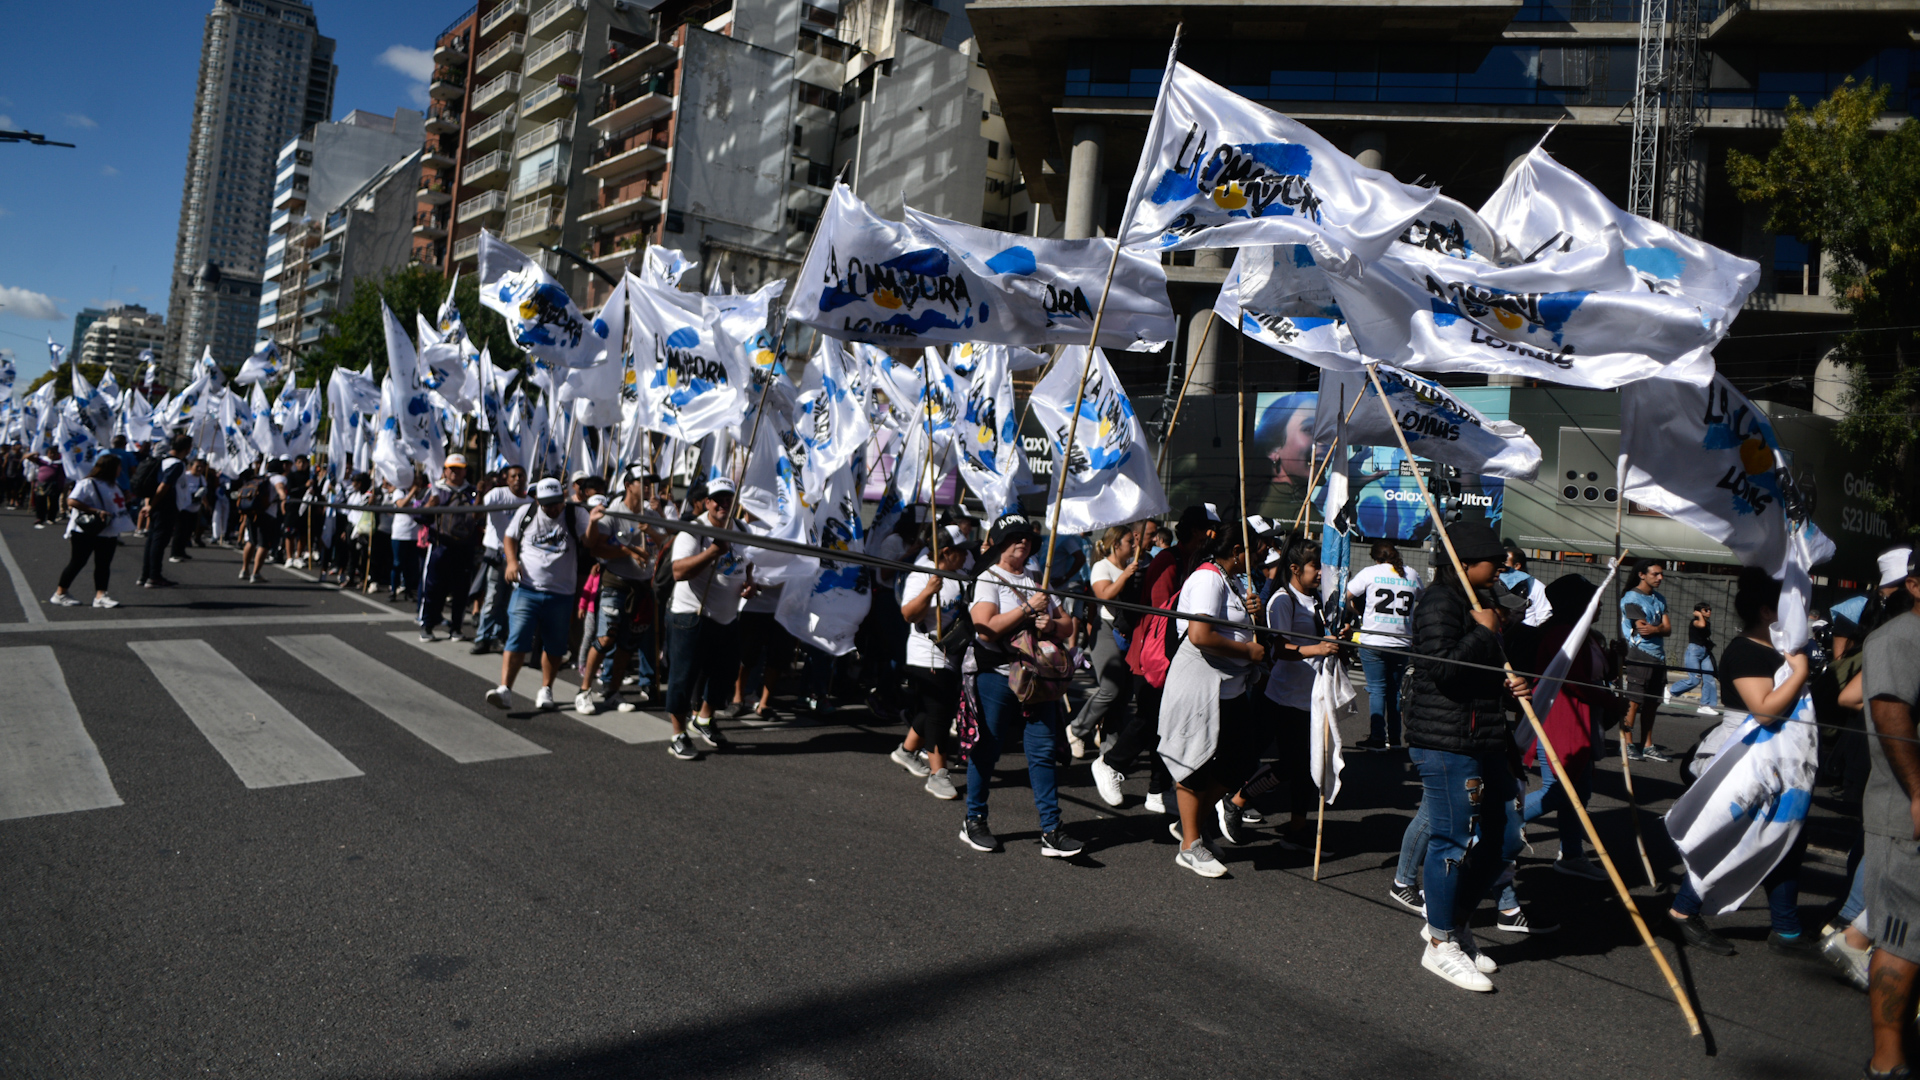 Las columnas de militantes que marcharán hasta la Plaza de Mayo formaron sobre la Avenida del Libertador. Son 14 kilómetros en total

